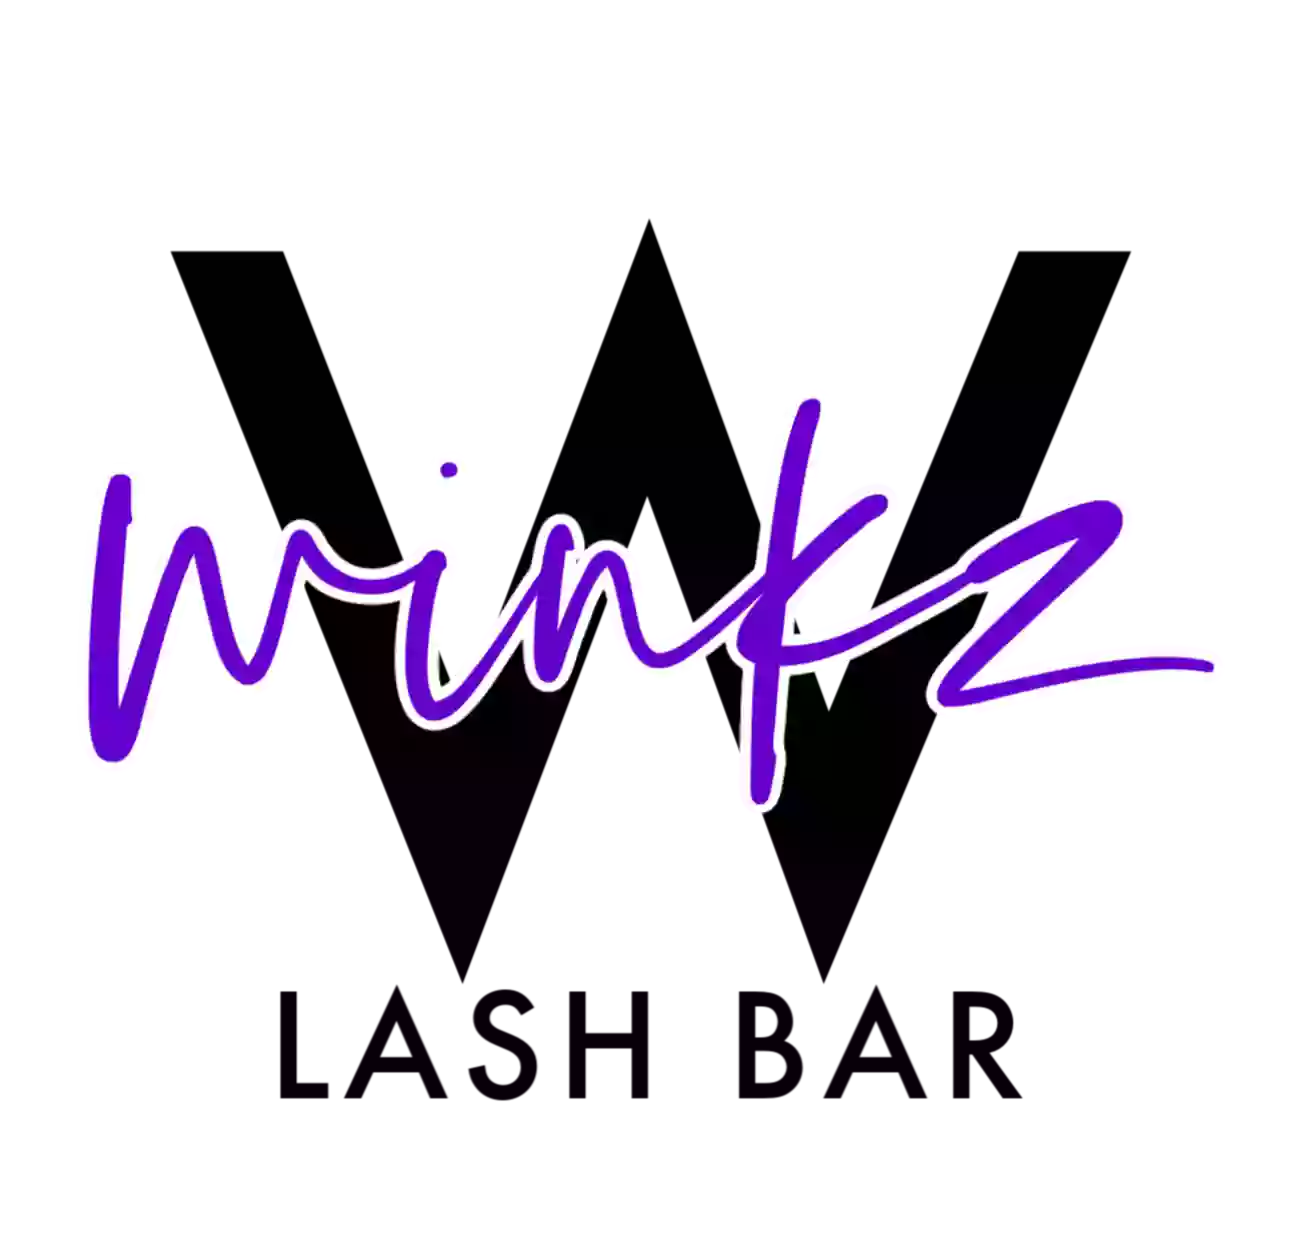 Winkz Lash Bar